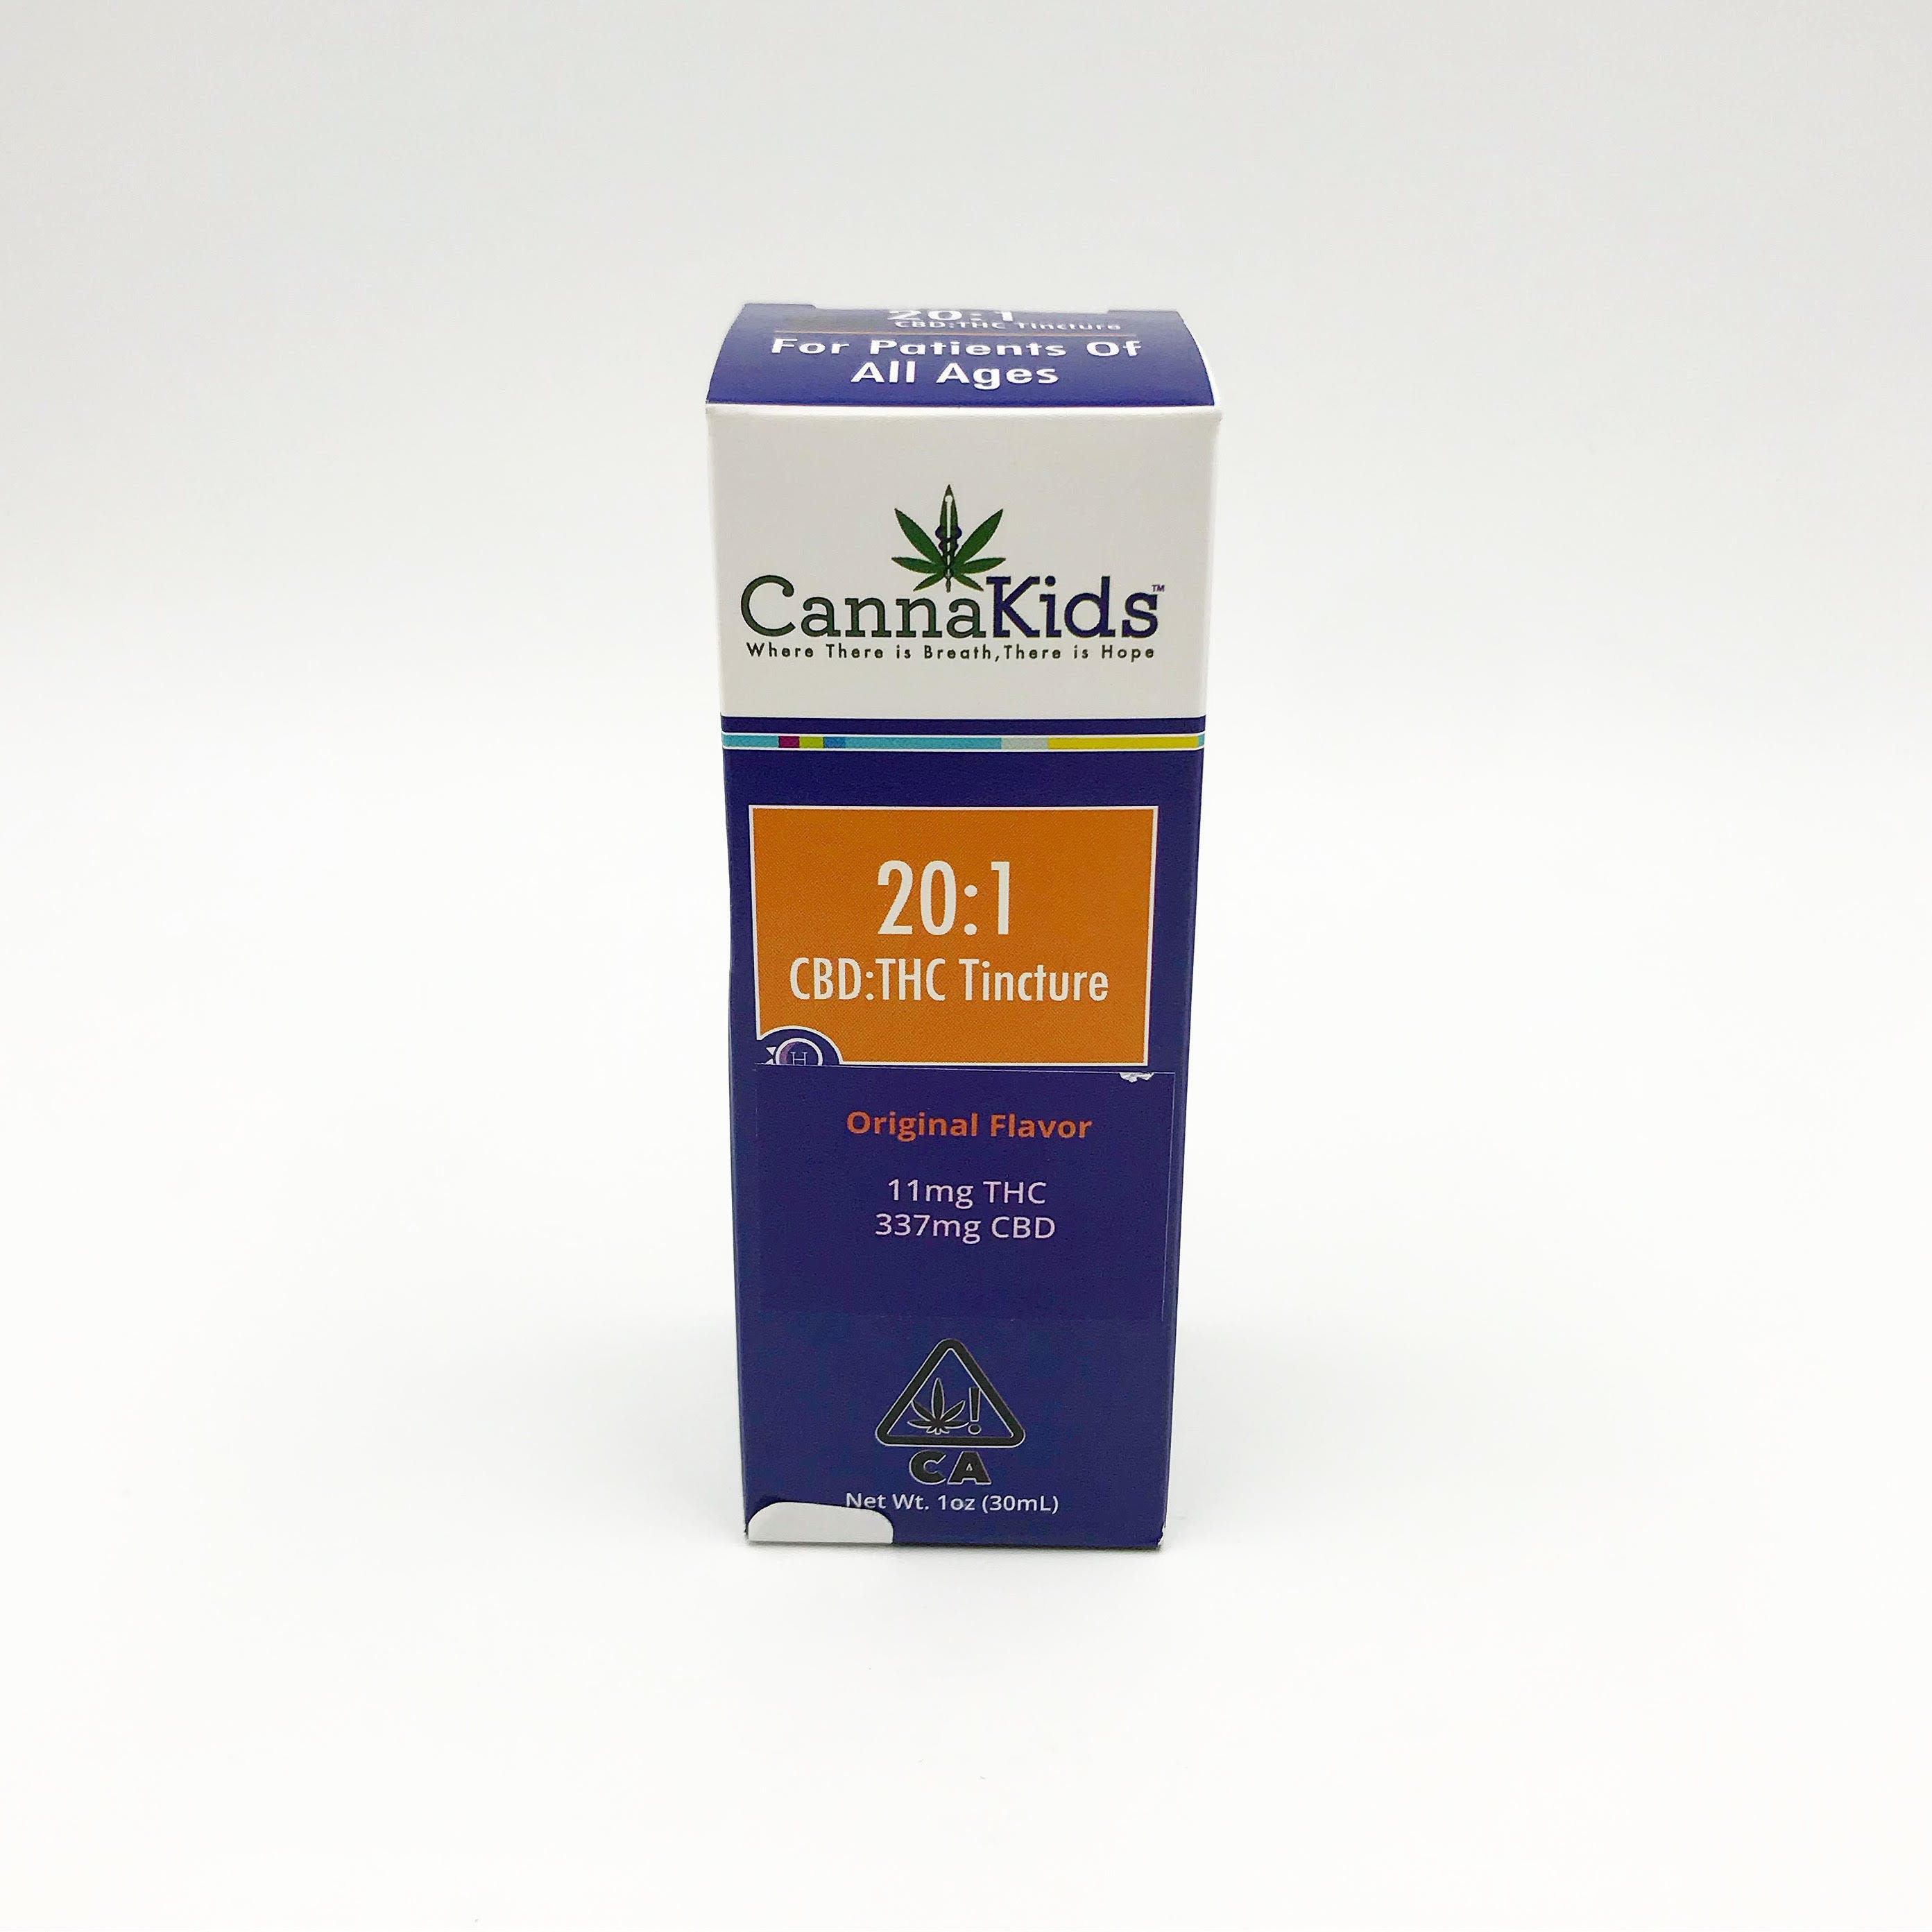 CannaKids - 20:1 CBD:THC, 337mg